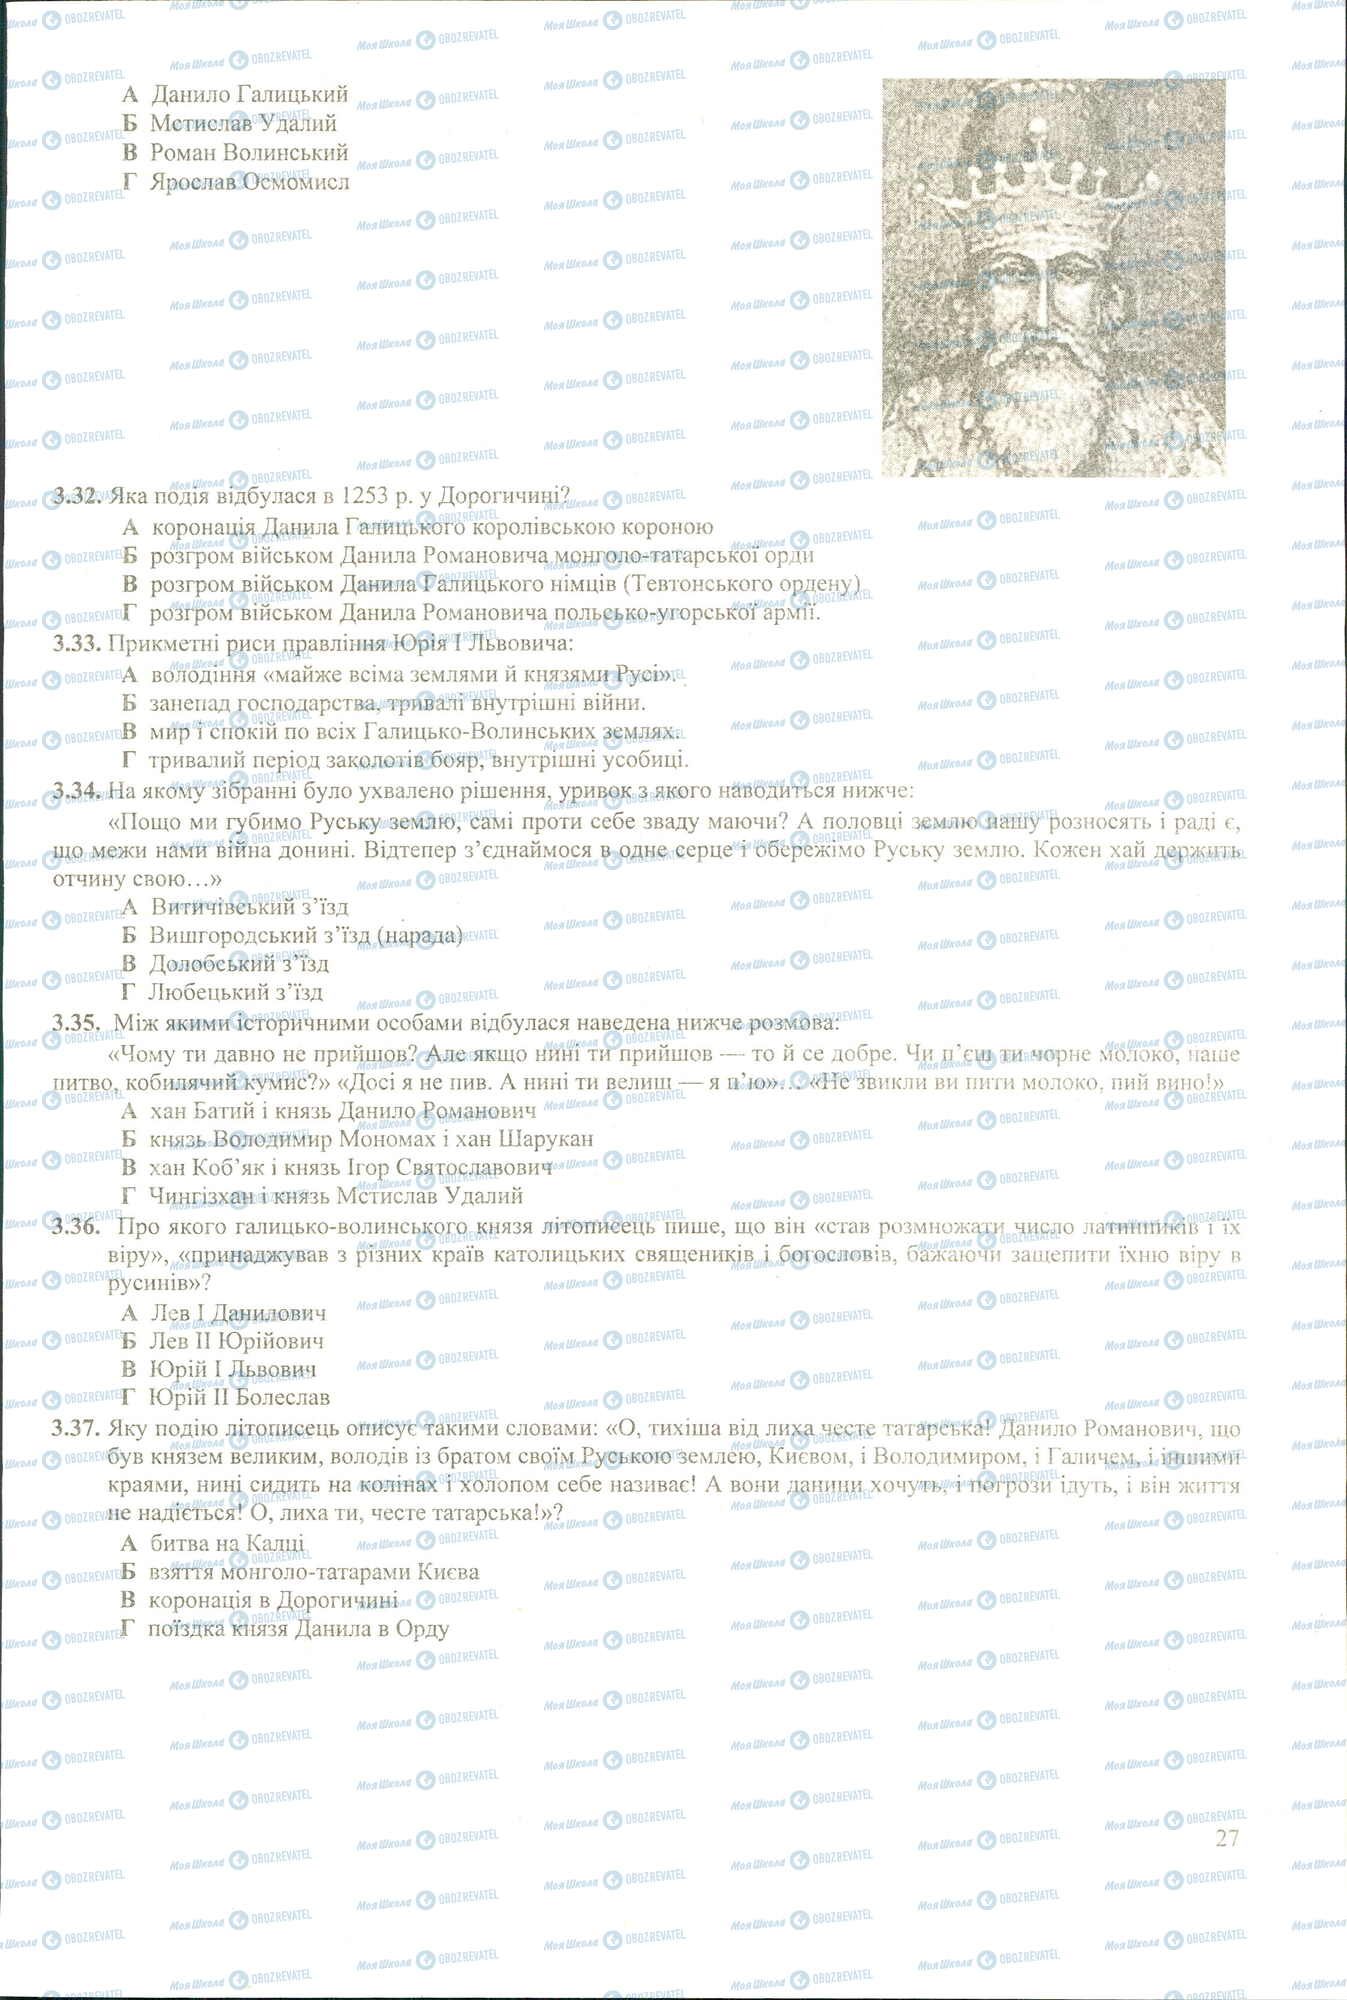 ЗНО История Украины 11 класс страница 3.32-3.37